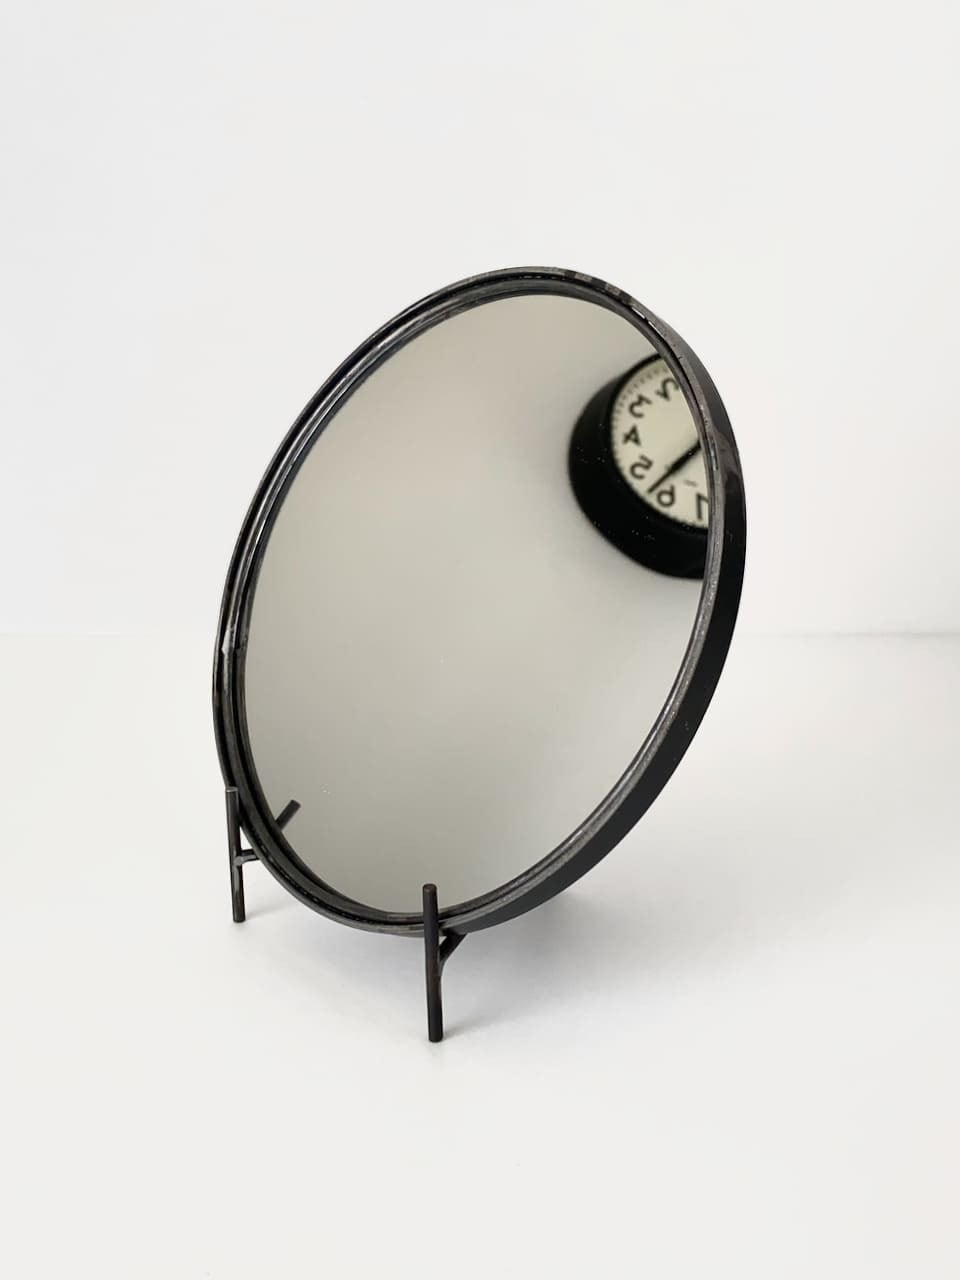 ラウンドミラー S 鏡 / Round Mirror Small